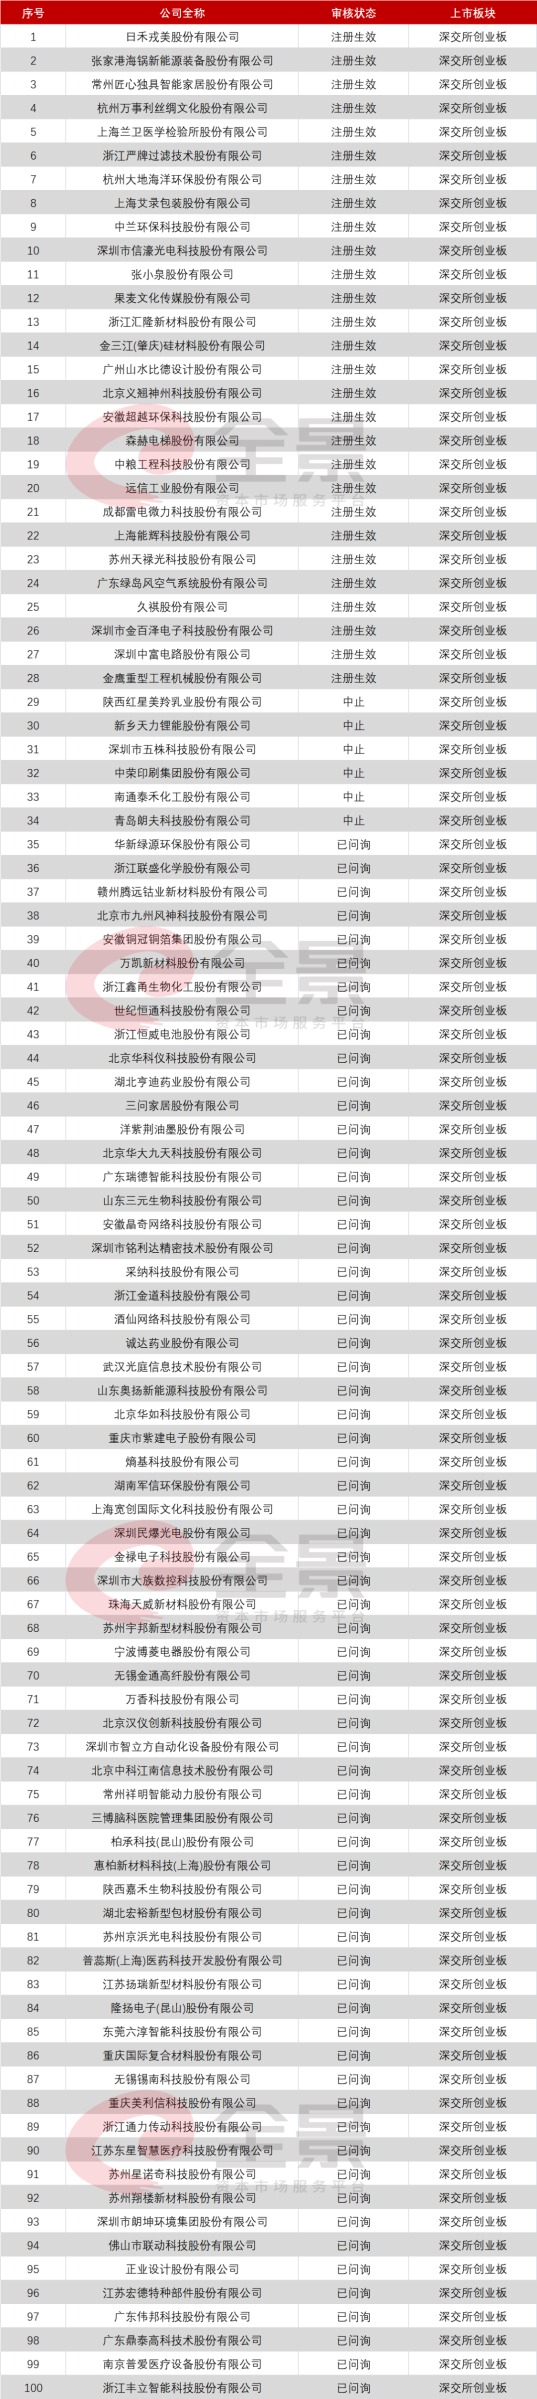 中国电信有望成10年最大IPO 证监会要对“抱团压价”动手了？（附IPO排队名单）